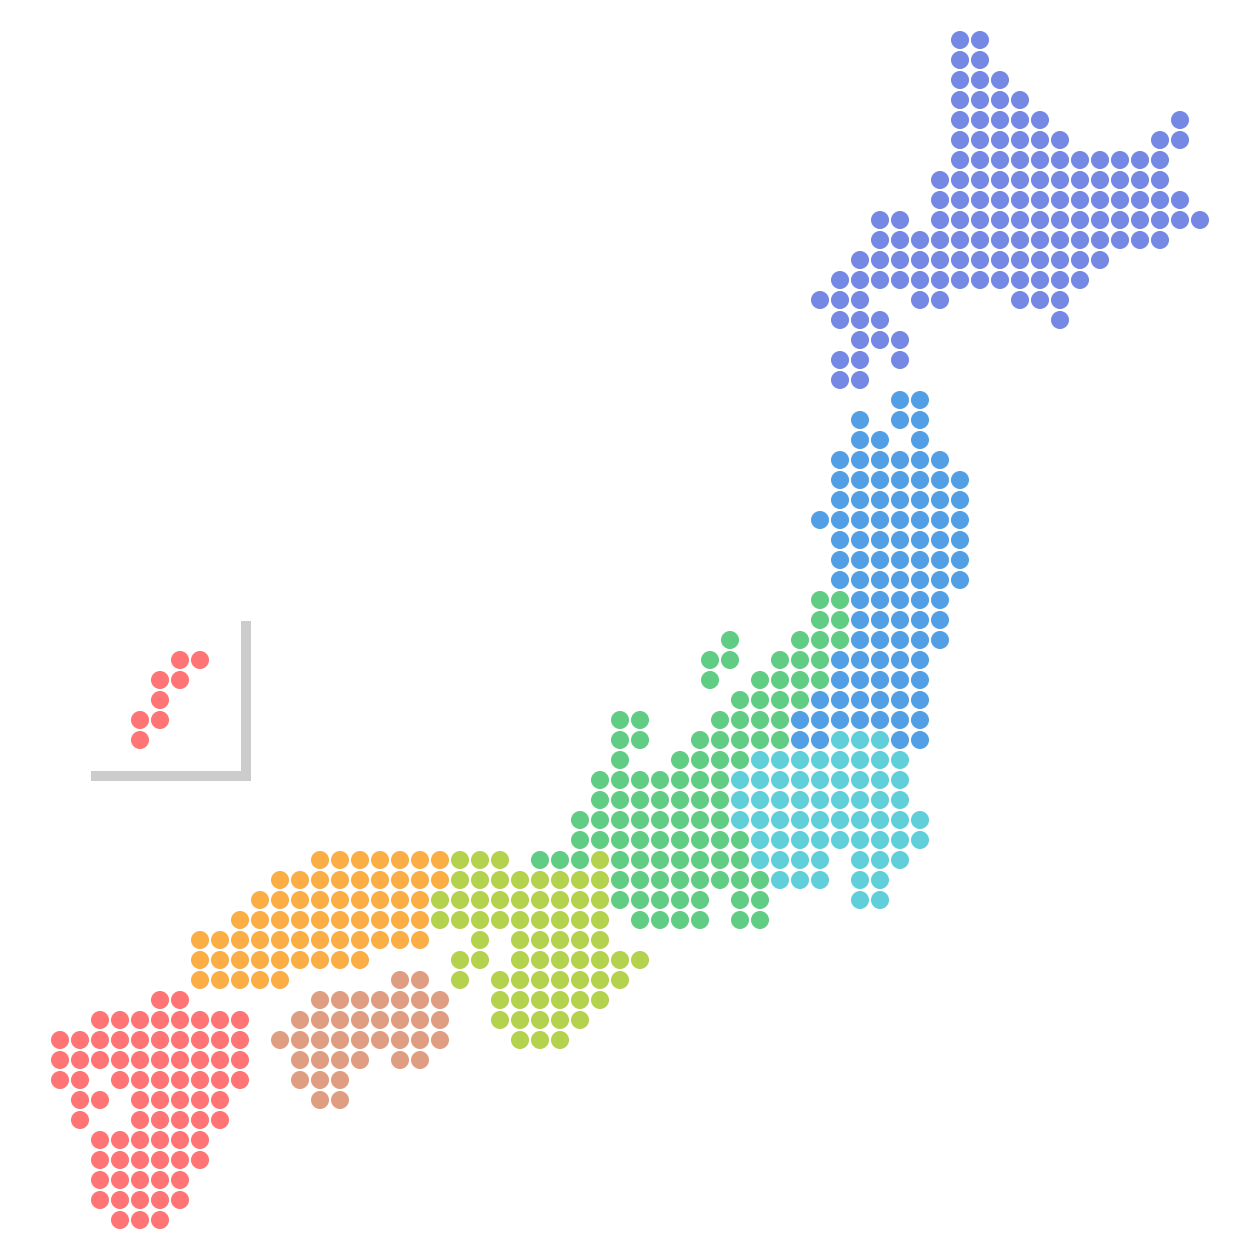 日本地図のドットイラスト画像 地方区分色分け 日本地図無料イラスト素材集